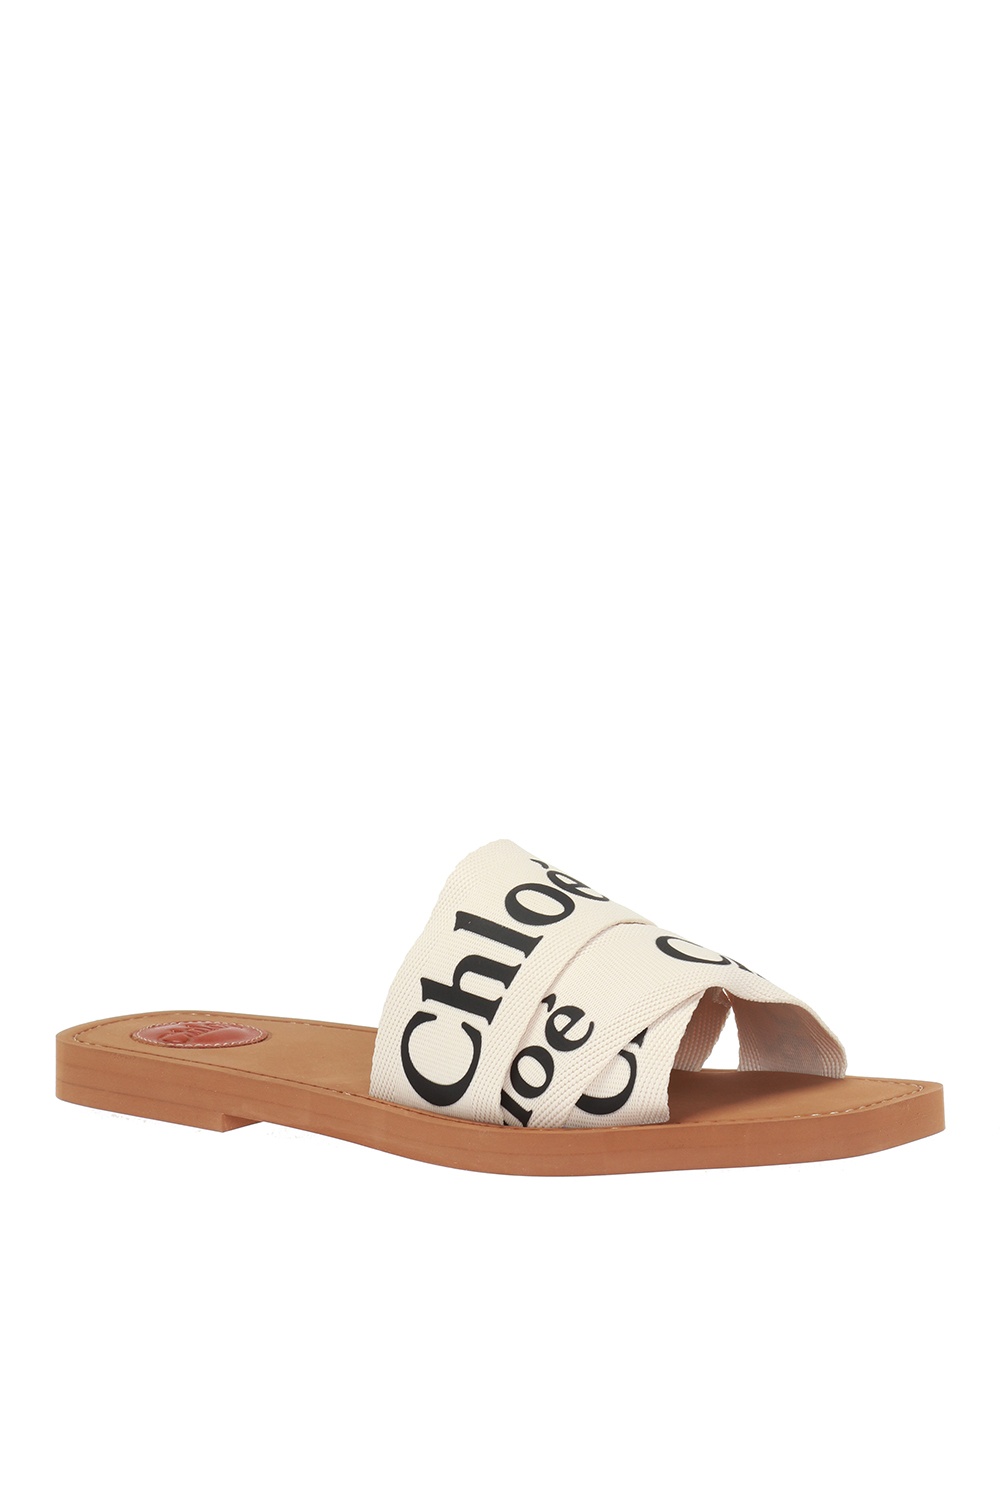 Chloé Branded slides | Women's Shoes | Vitkac